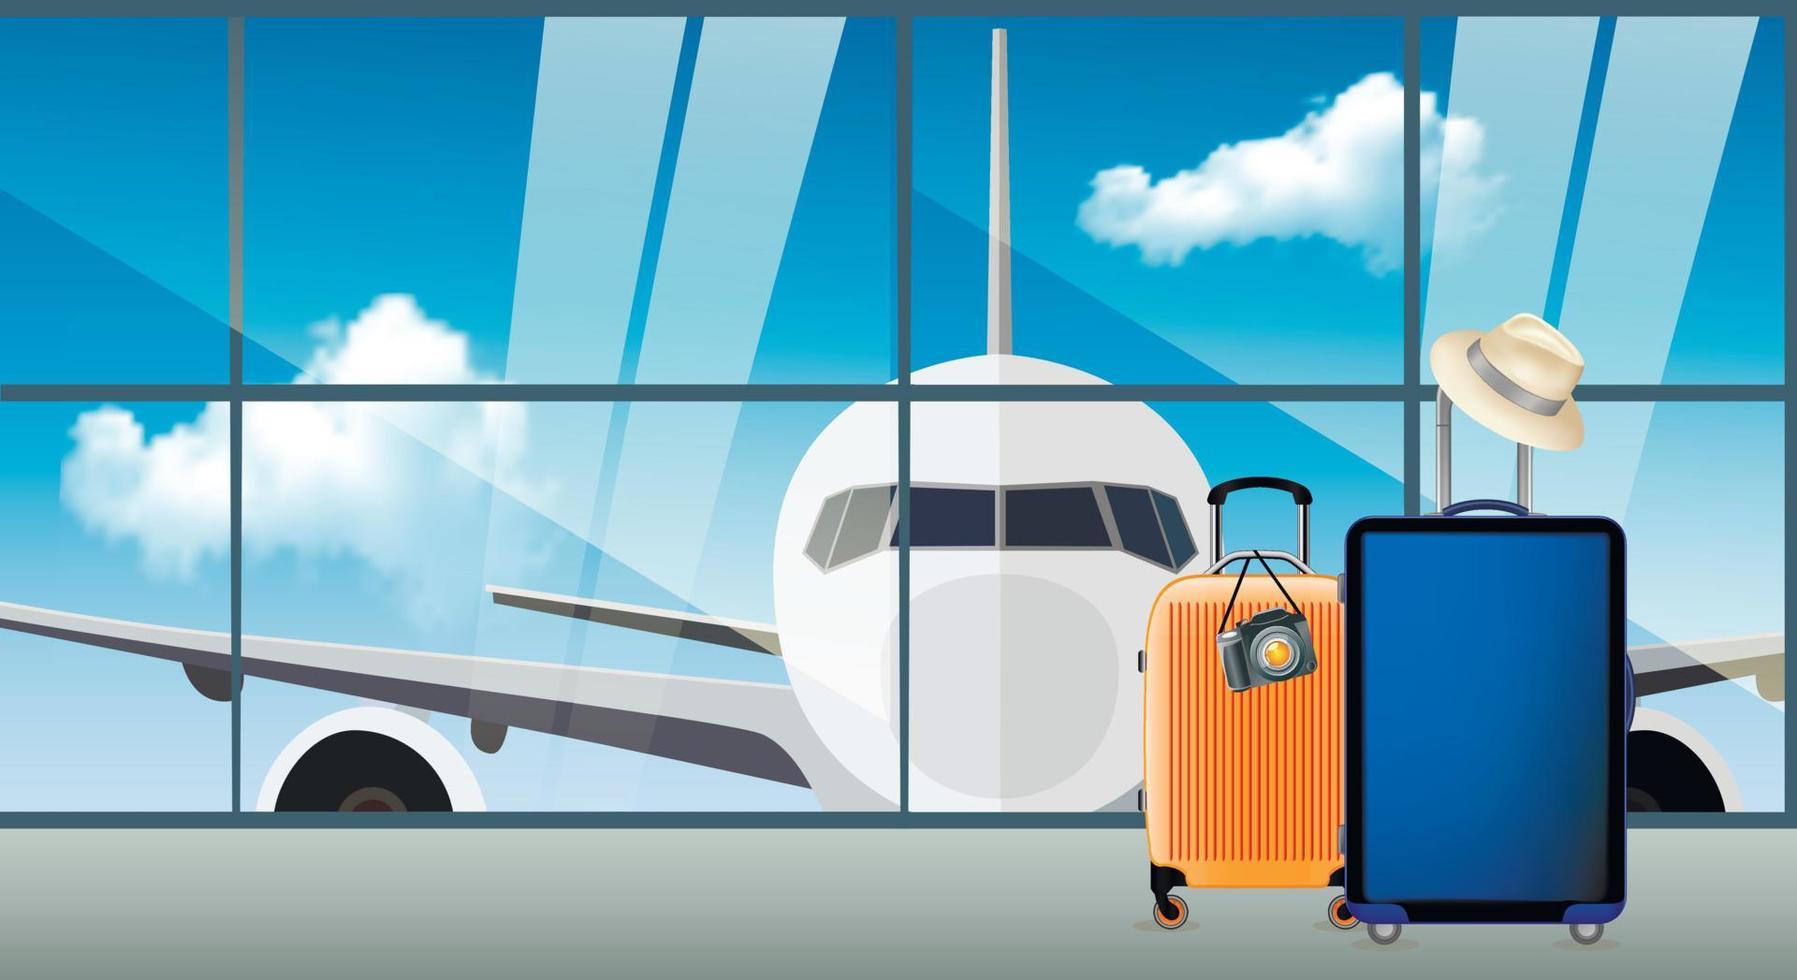 tidig bokning av flygresor och flyg runt om i världen, realistisk flygplanssammansättning och flerfärgade resväskor. vektor illustration